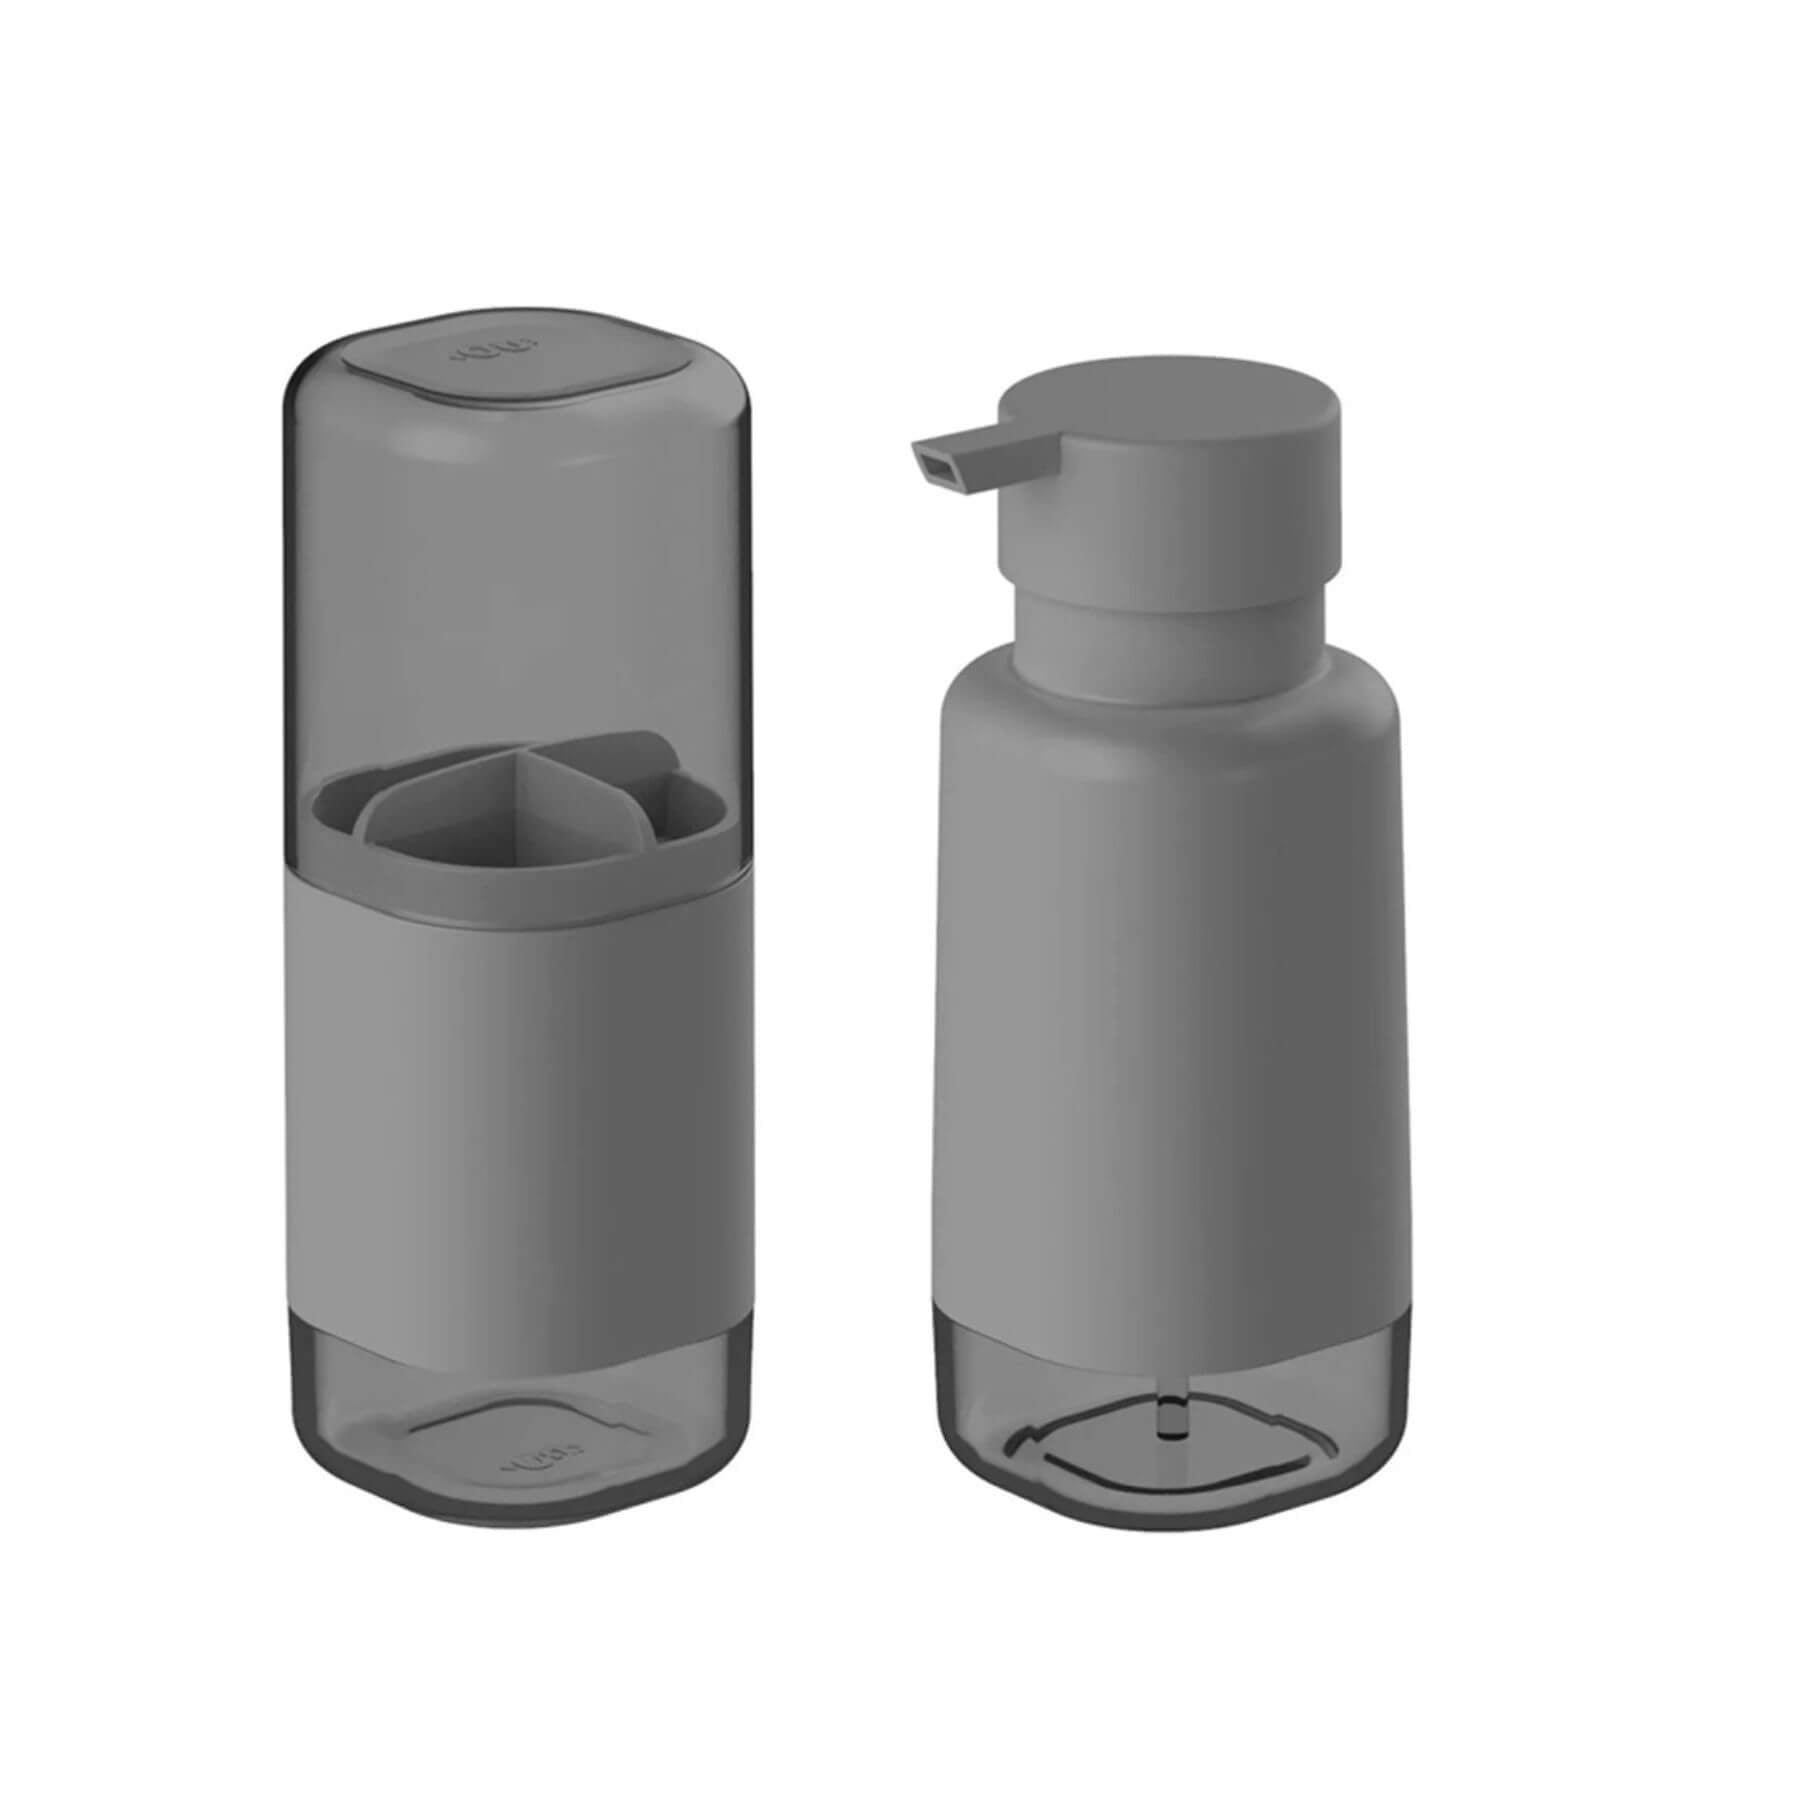 Kit accesorios para baño color plomo: portacepillos y jabonera liquido